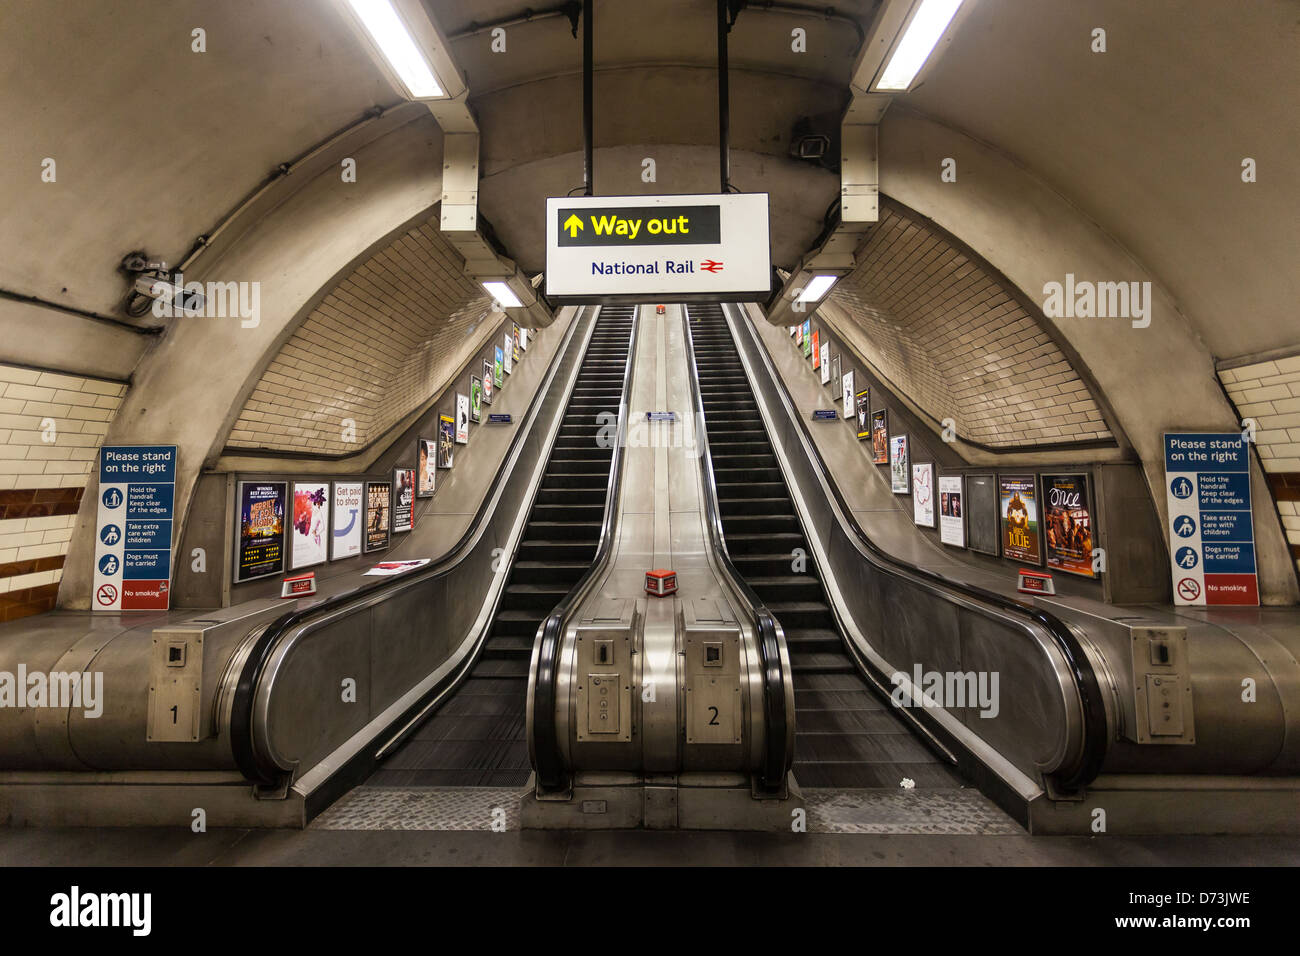 Underground station escalators, London, England, UK Stock Photo